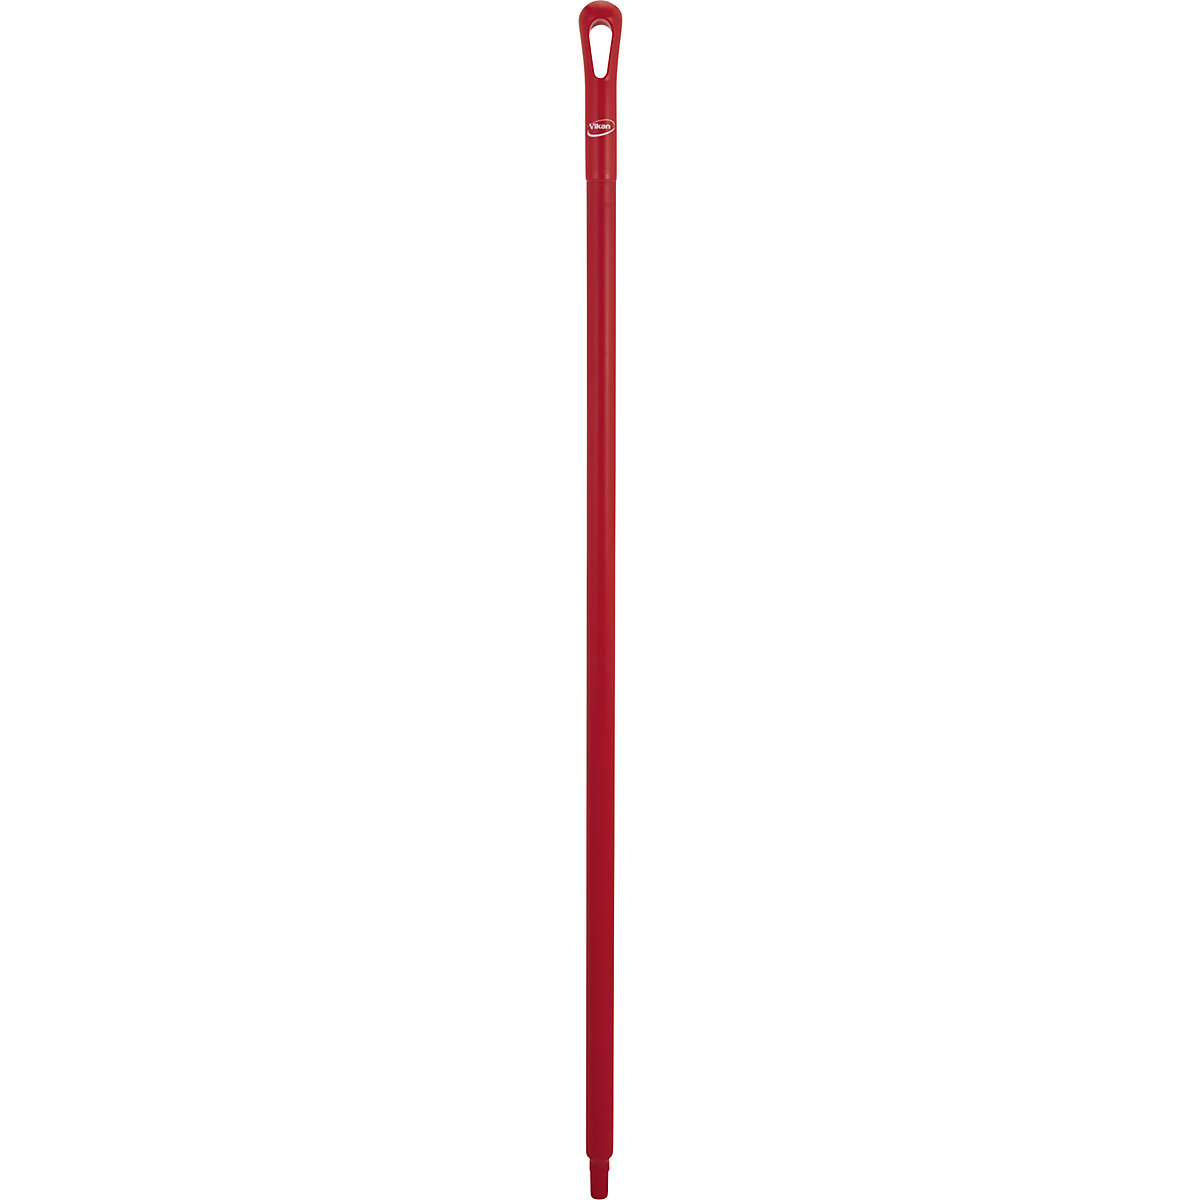 Higijenska drška – Vikan, Ø 34 mm, dužina 1300 mm, pak. 10 kom., u crvenoj boji-7